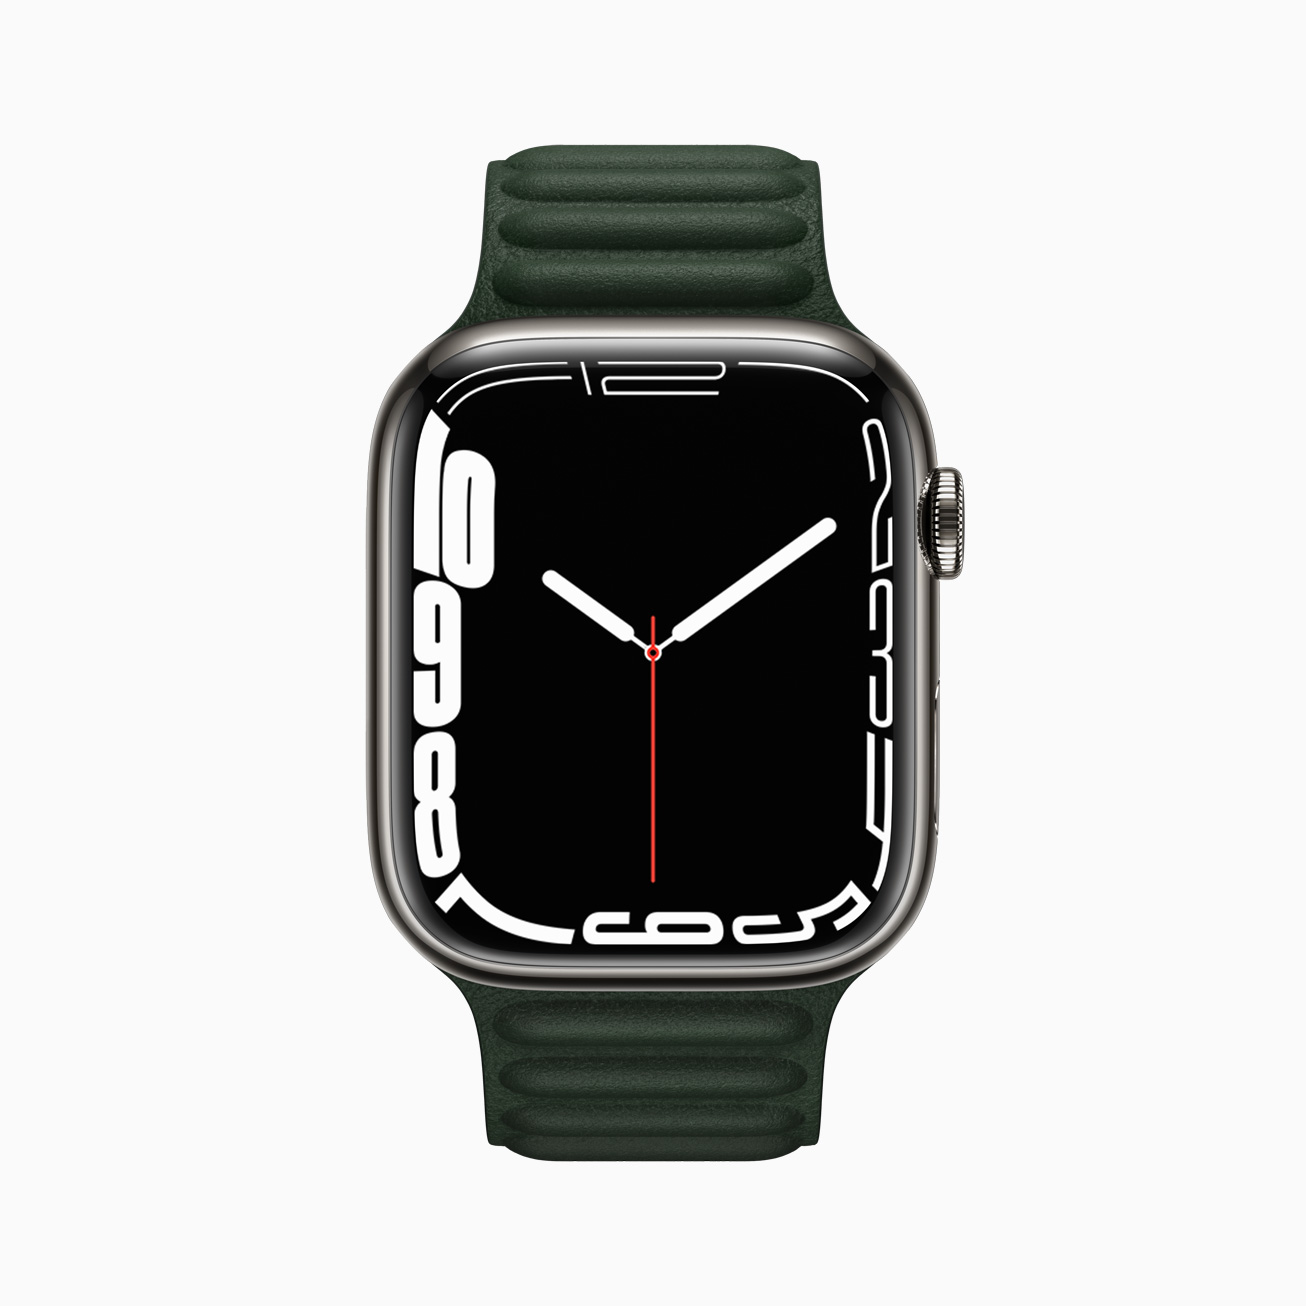 Les précommandes des nouvelle Apple Watch démarreraient la semaine prochaine